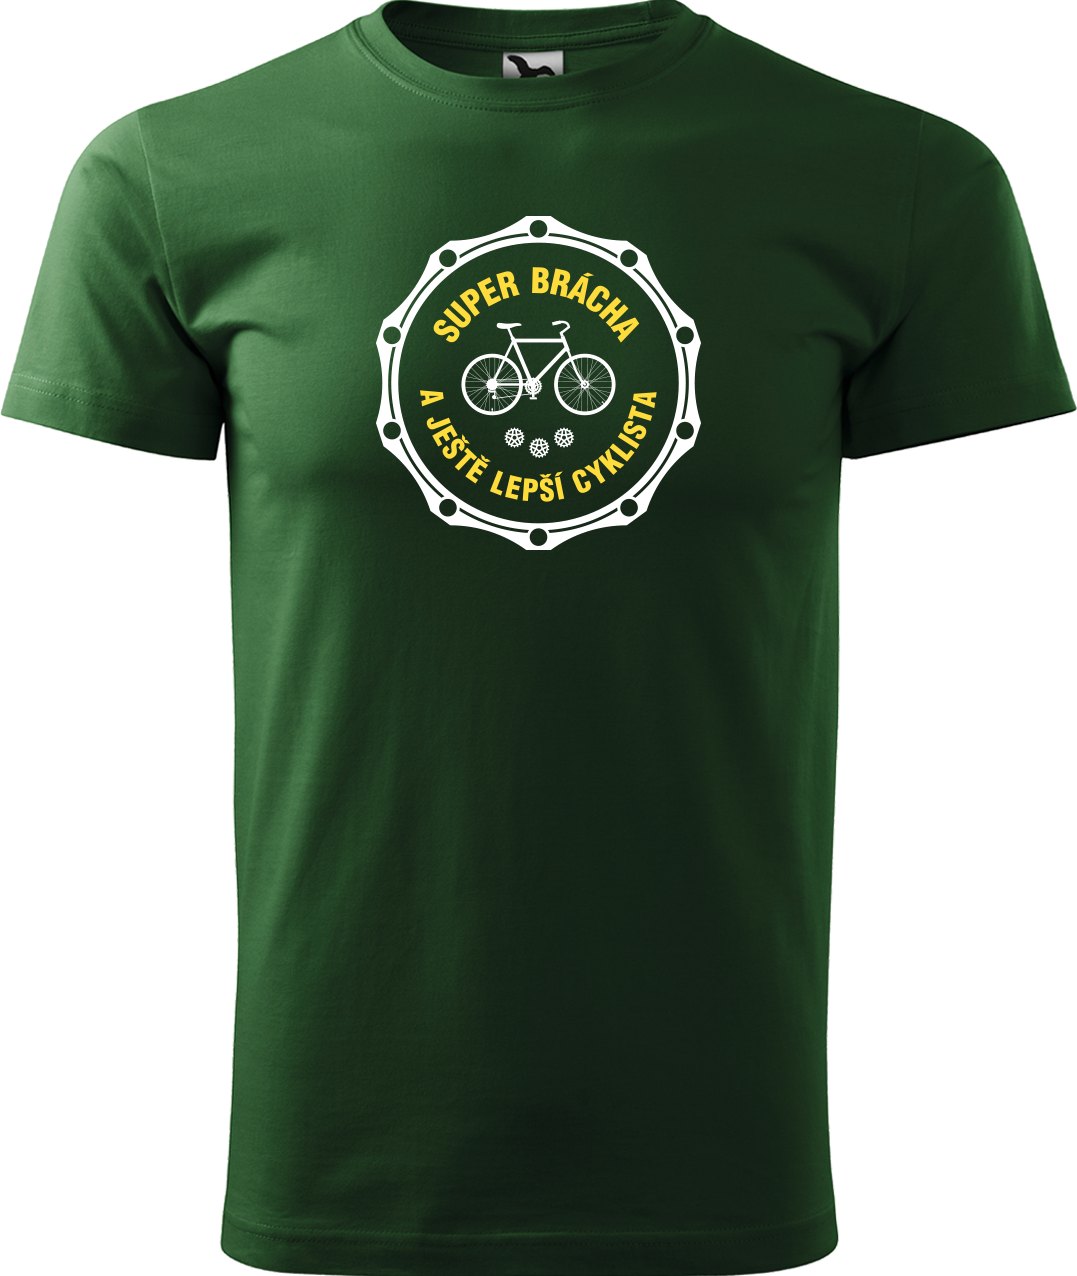 Pánské tričko pro cyklistu - Super brácha a ještě lepší cyklista Velikost: XL, Barva: Lahvově zelená (06)